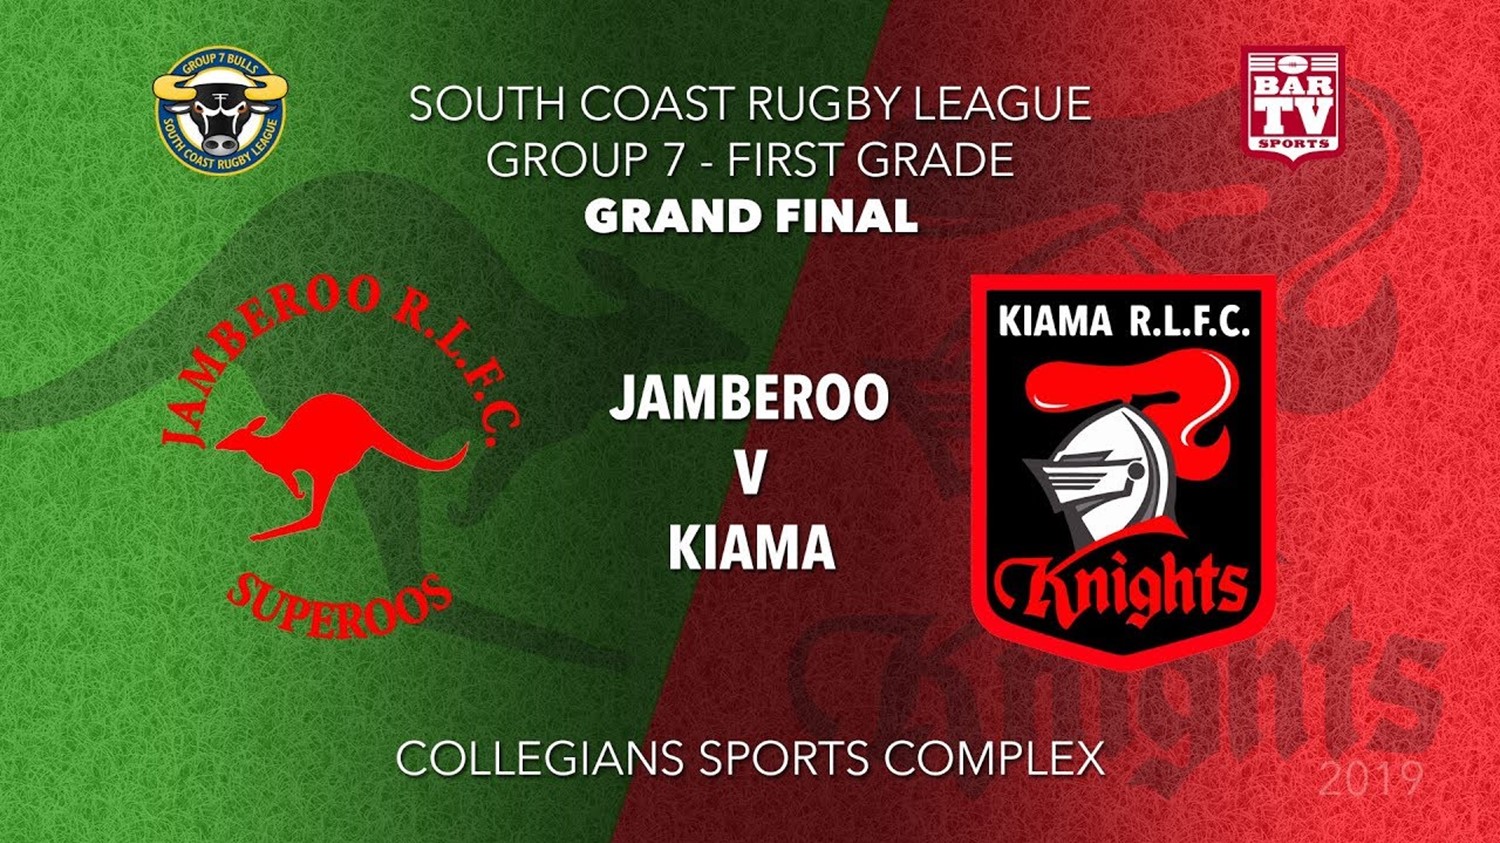  Group 7 South Coast Rugby League Grand Final - 1st Grade - Jamberoo v  Kiama Knights Minigame Slate Image